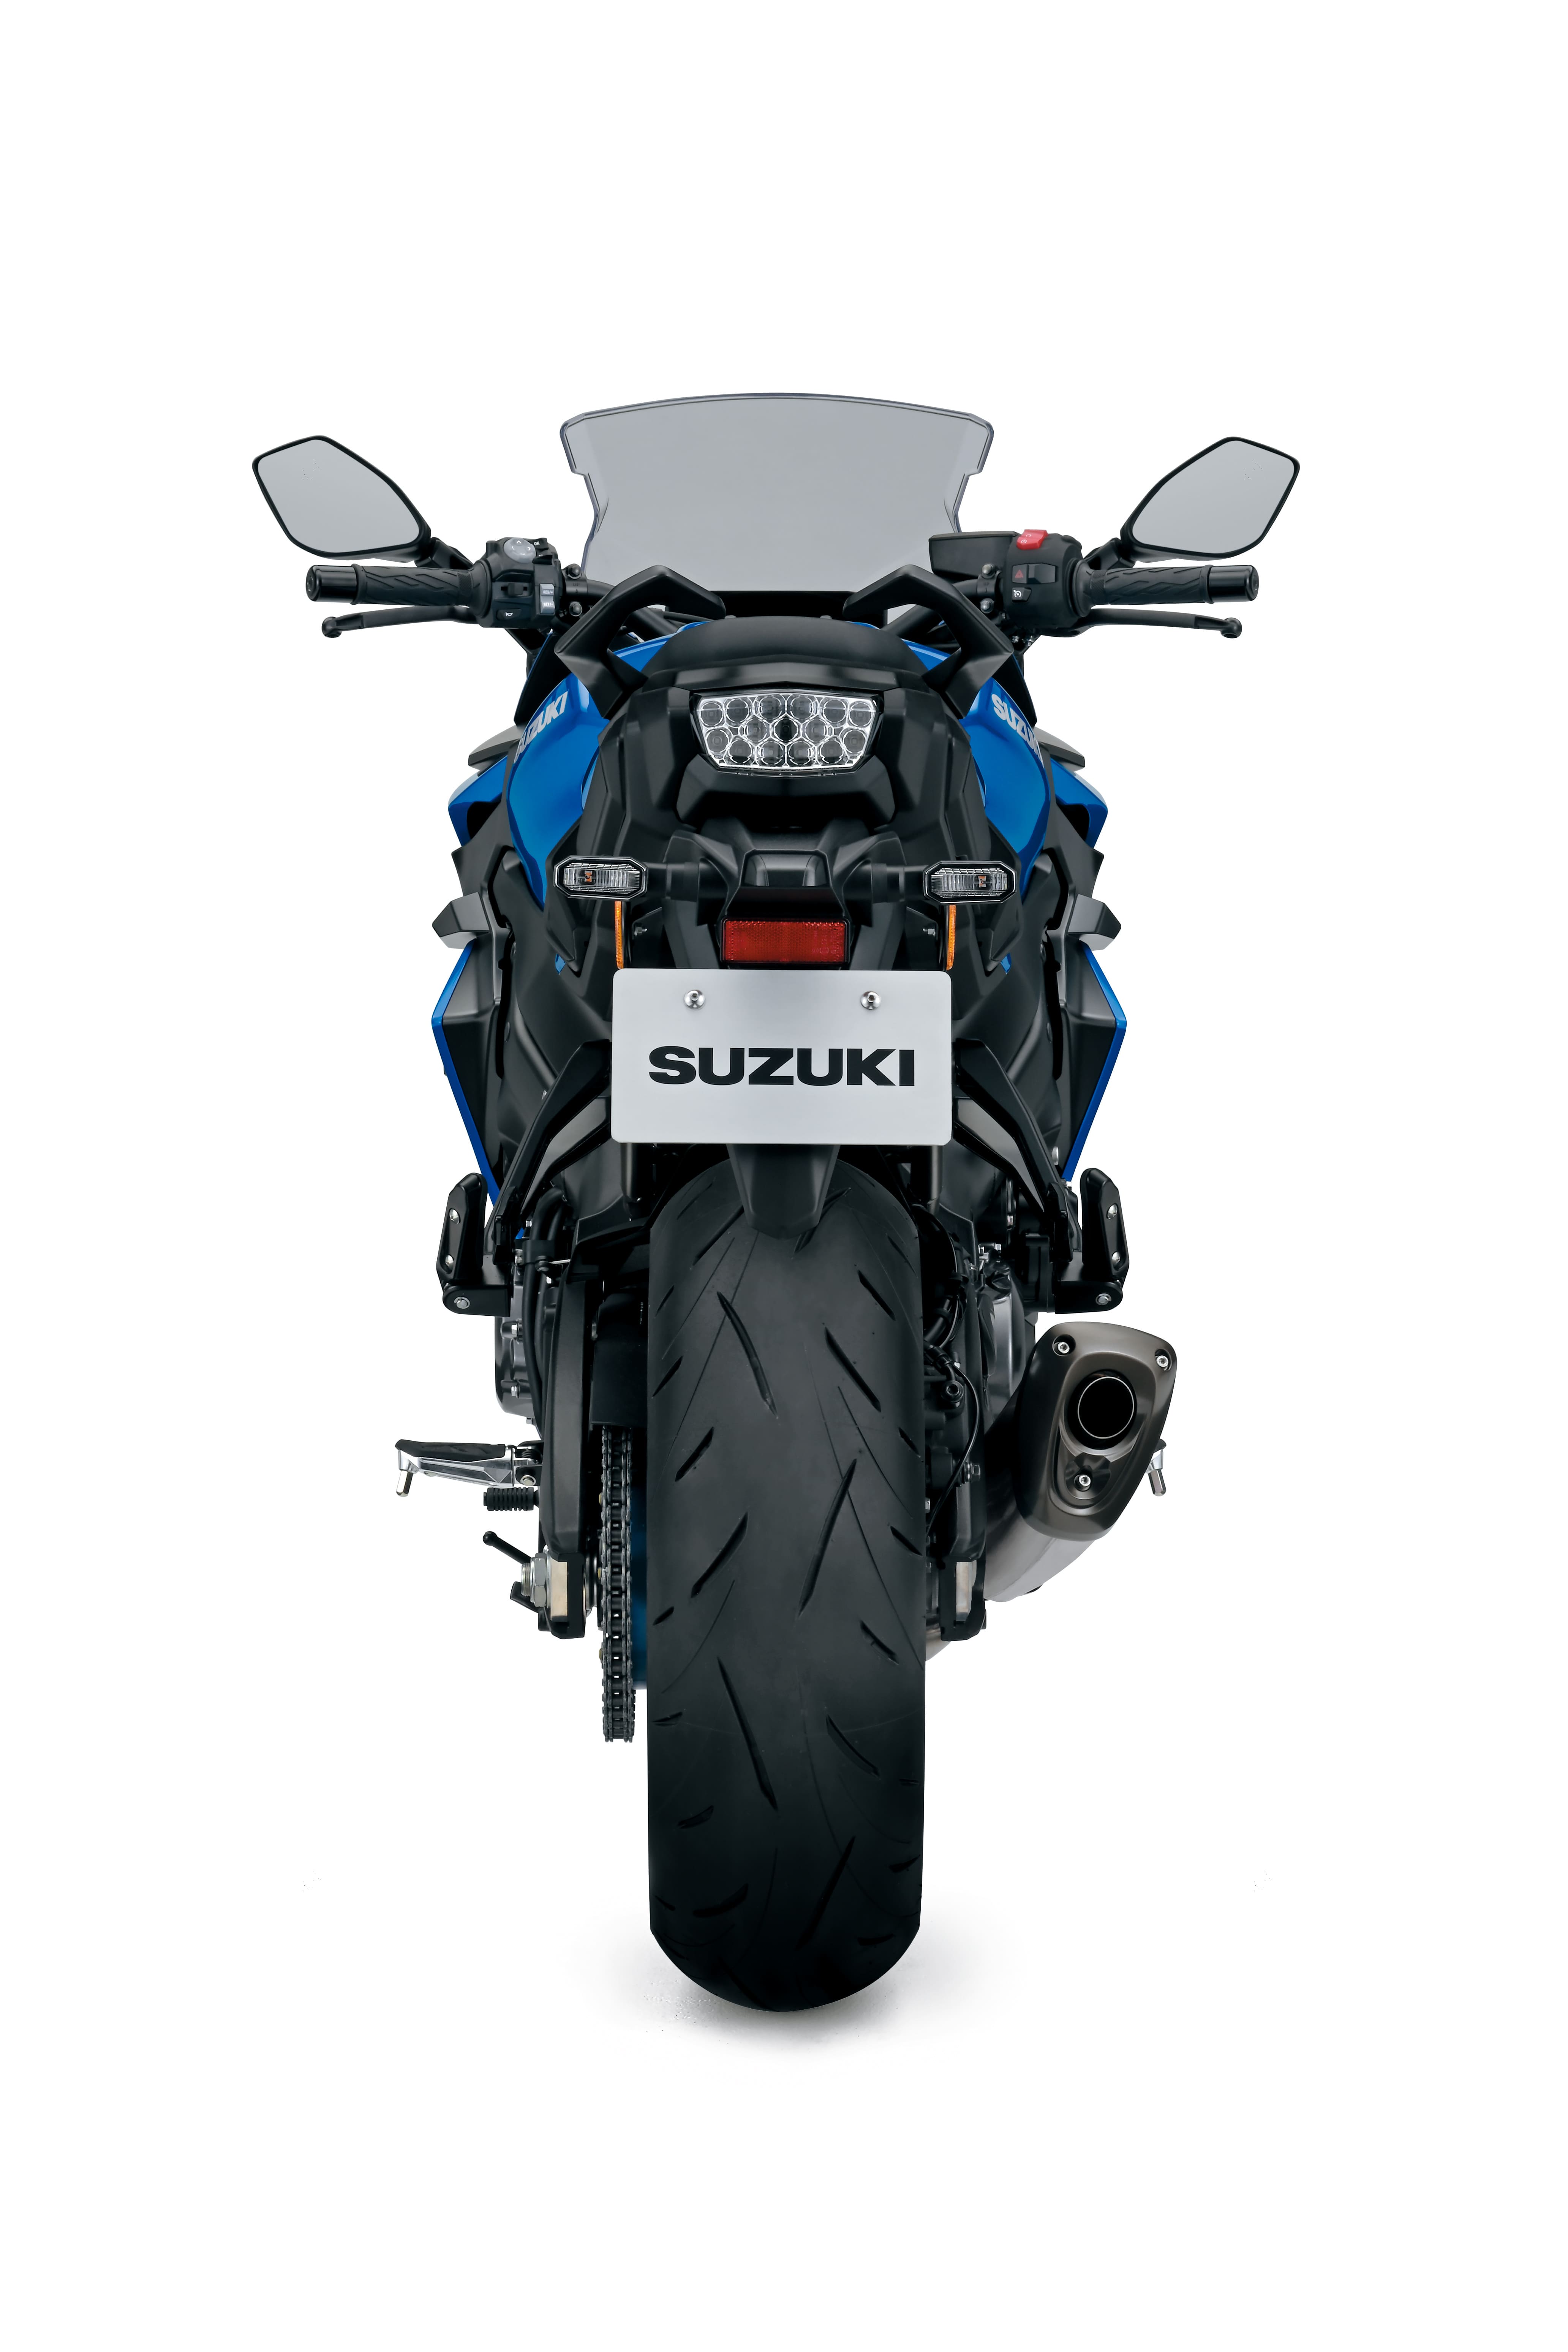 Suzuki GSX-S1000 GT - Metallic Triton Blue, New Suzuki Bikes